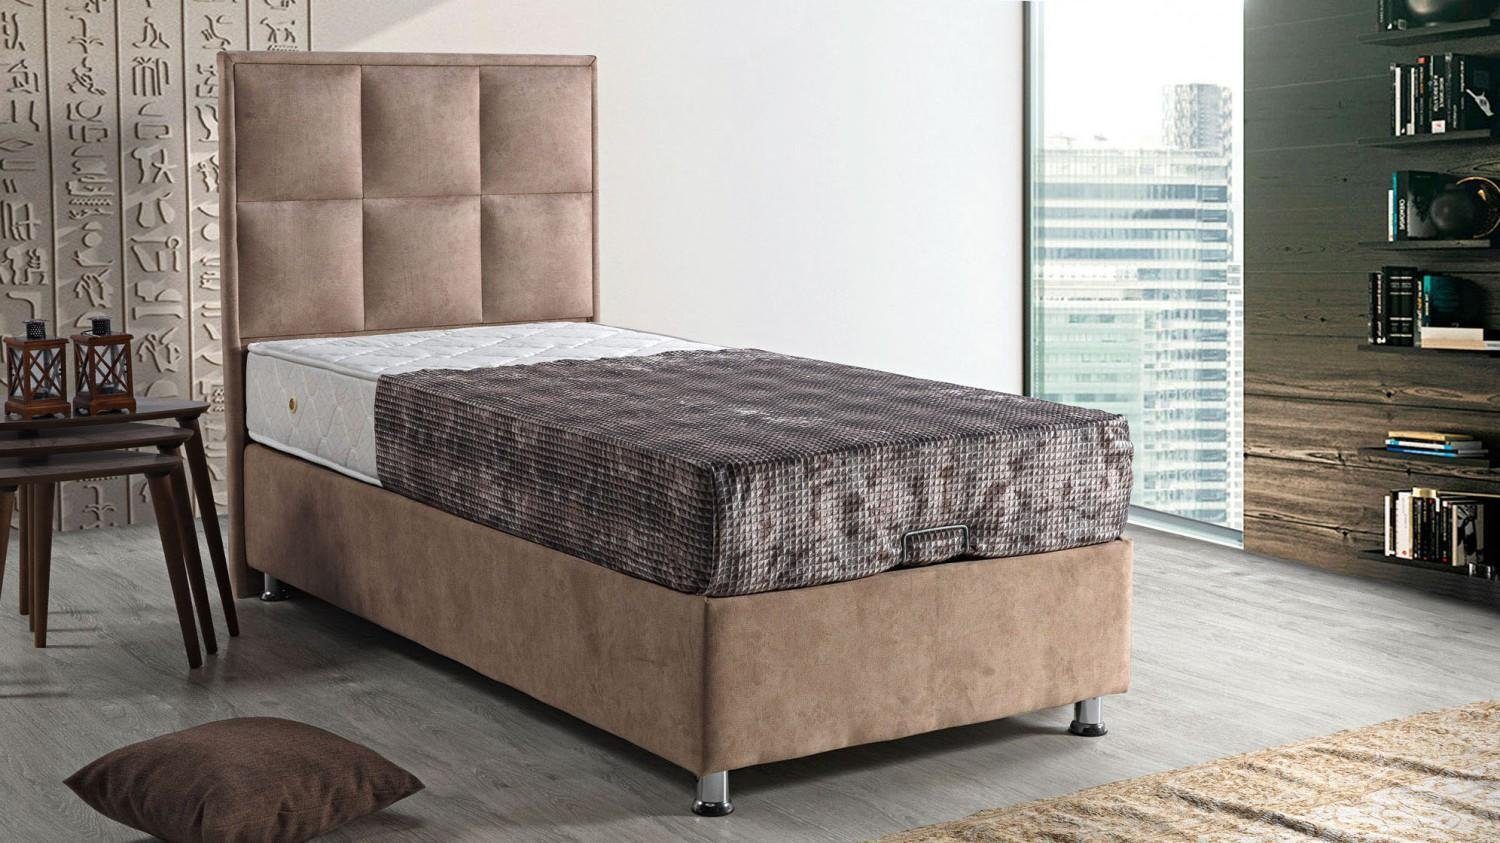 Schlafzimmer JVmoebel Made Europe Möbel (Bett), Luxus Betten In Design Bett Polster Bett Modern 90x190